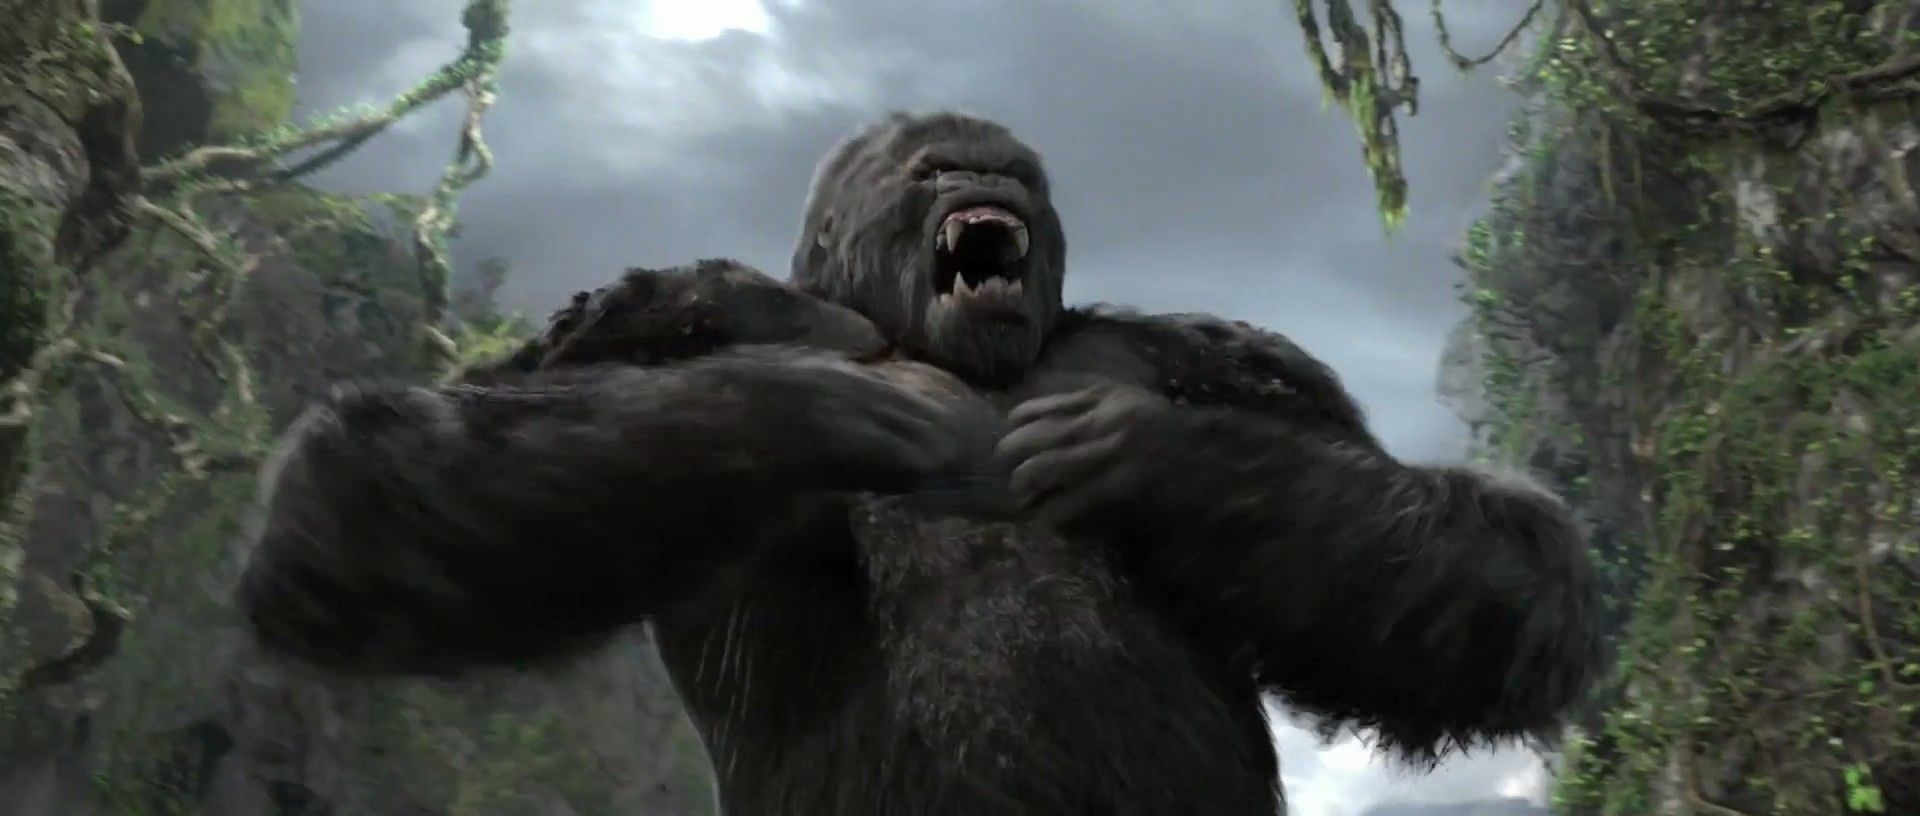 Les secrets des gorilles révélés : pourquoi se battent-ils le torse ?